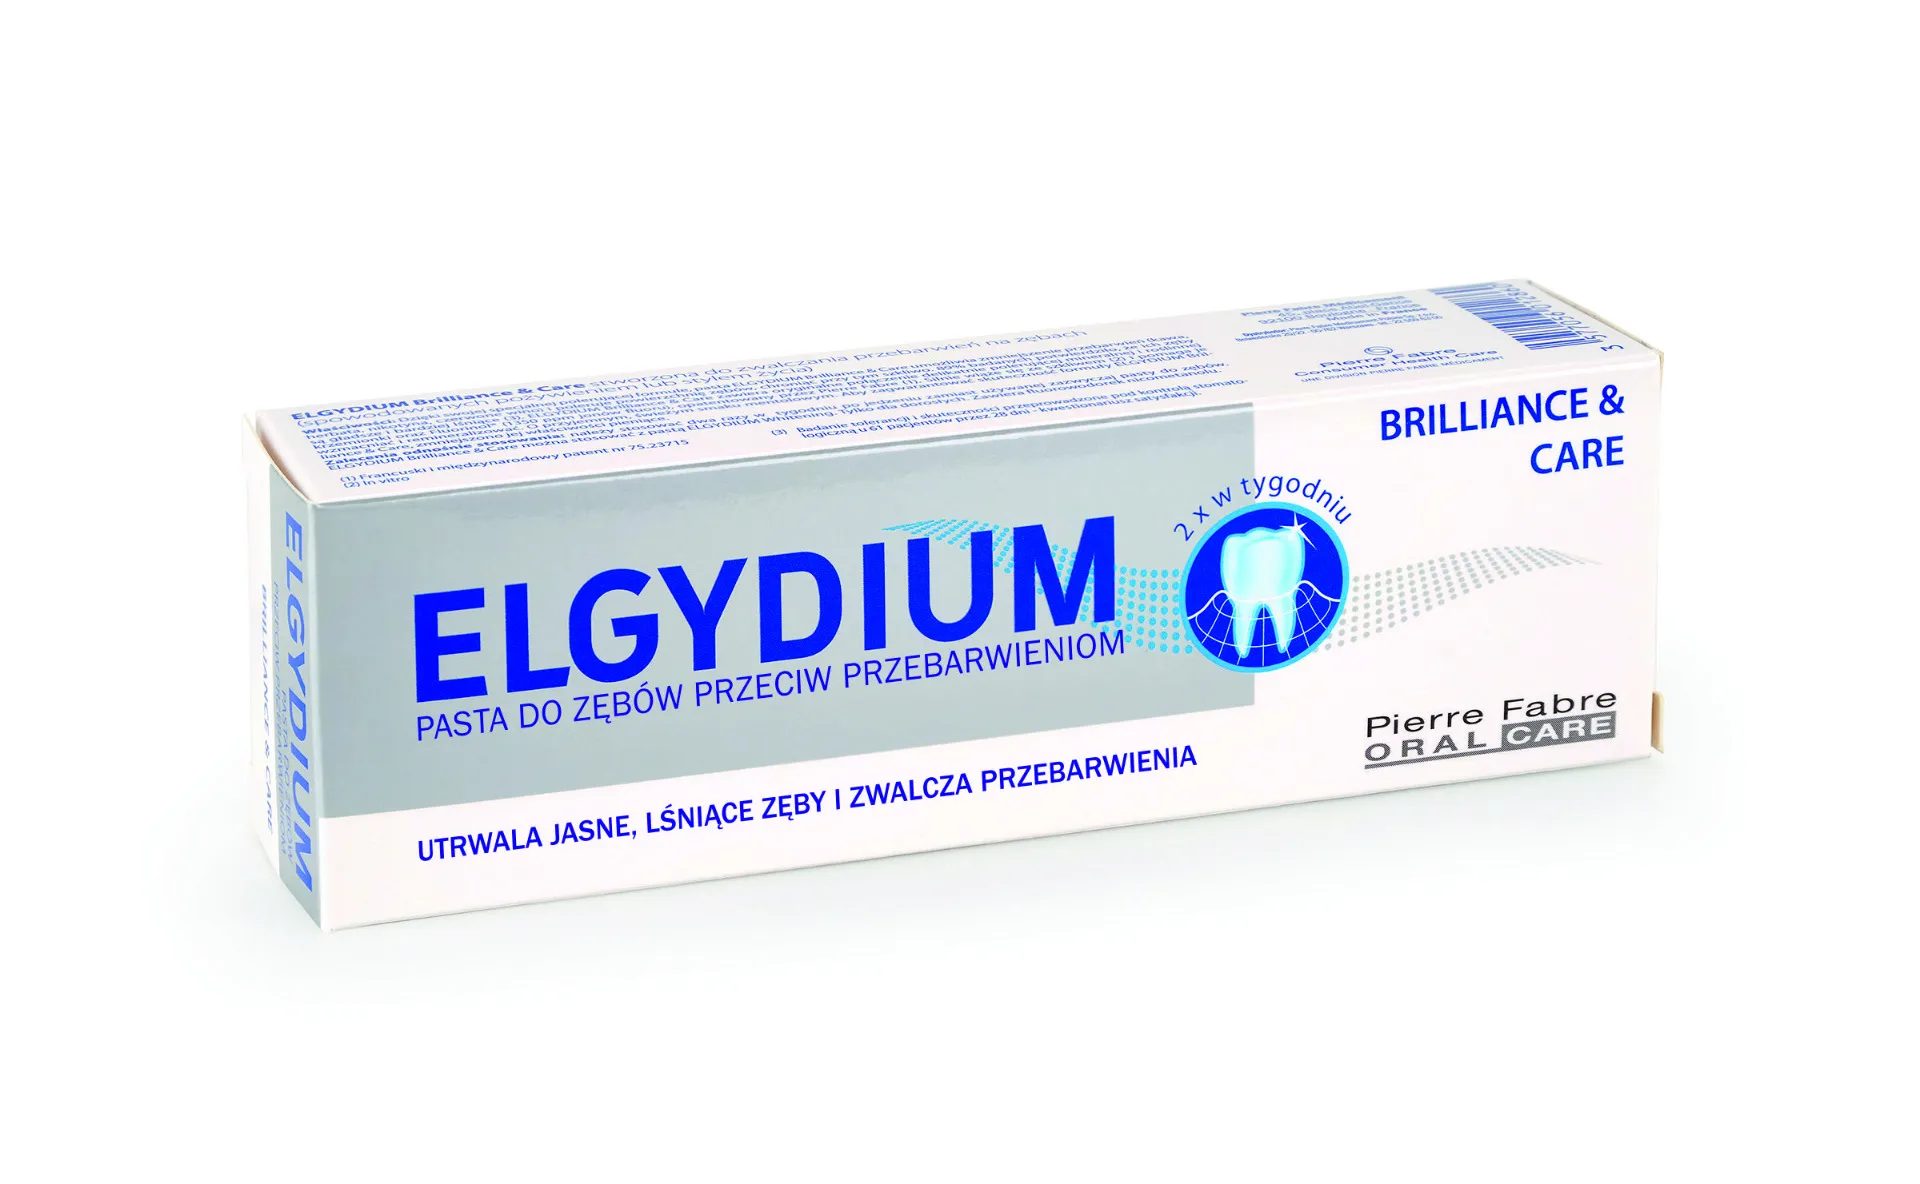 Elgydium Brilliance & Care, pasta do zębów, przeciw przebarwieniom, 30 ml